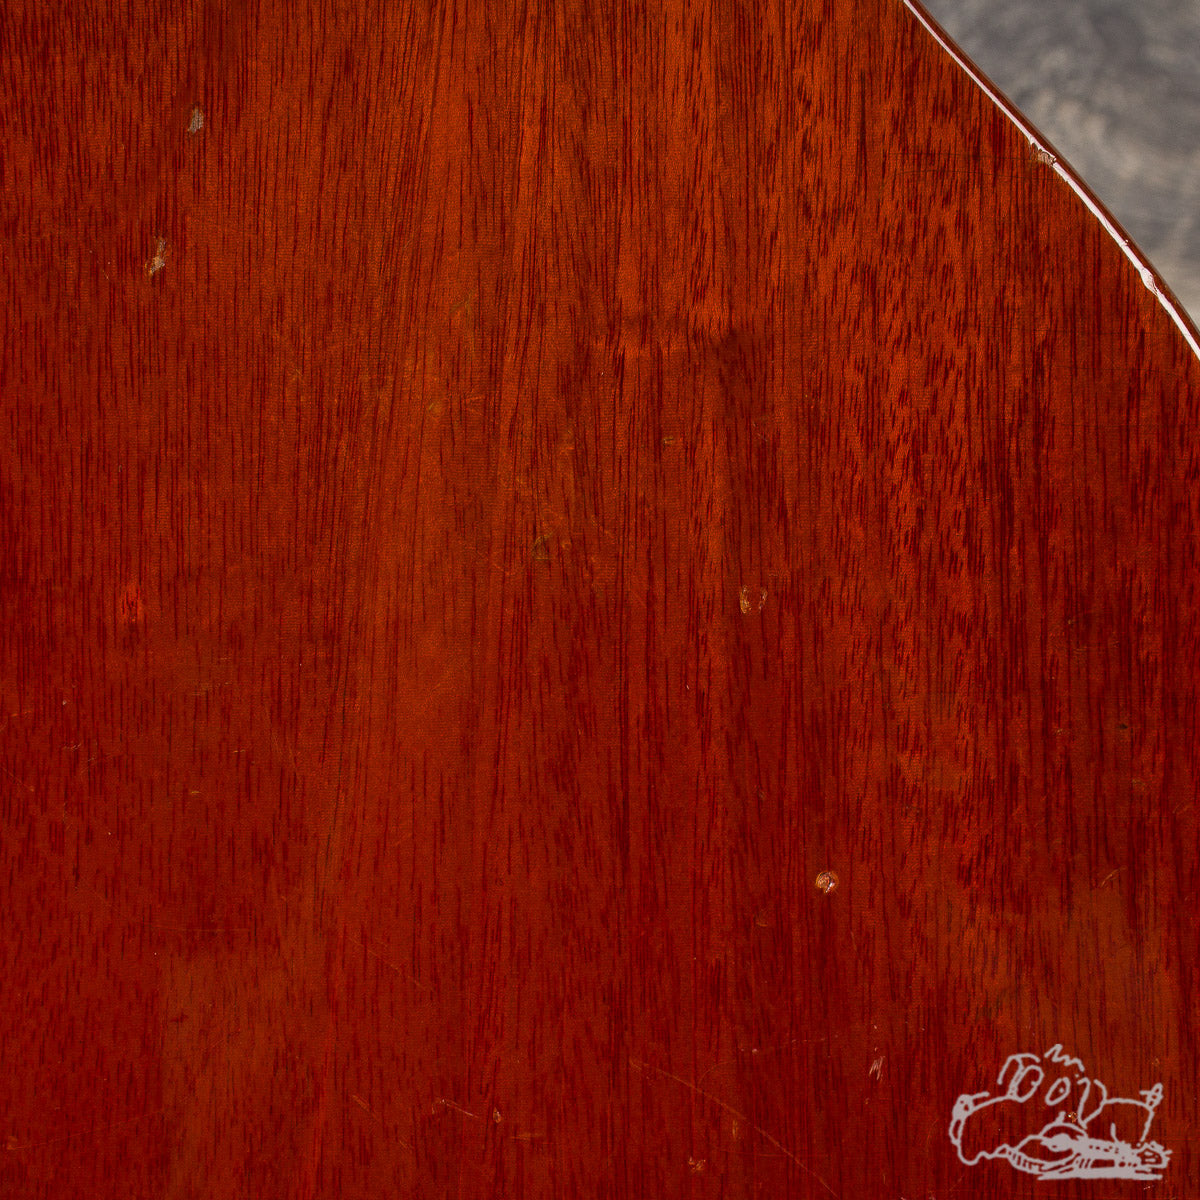 1959 Gibson Les Paul Standard - Sunburst